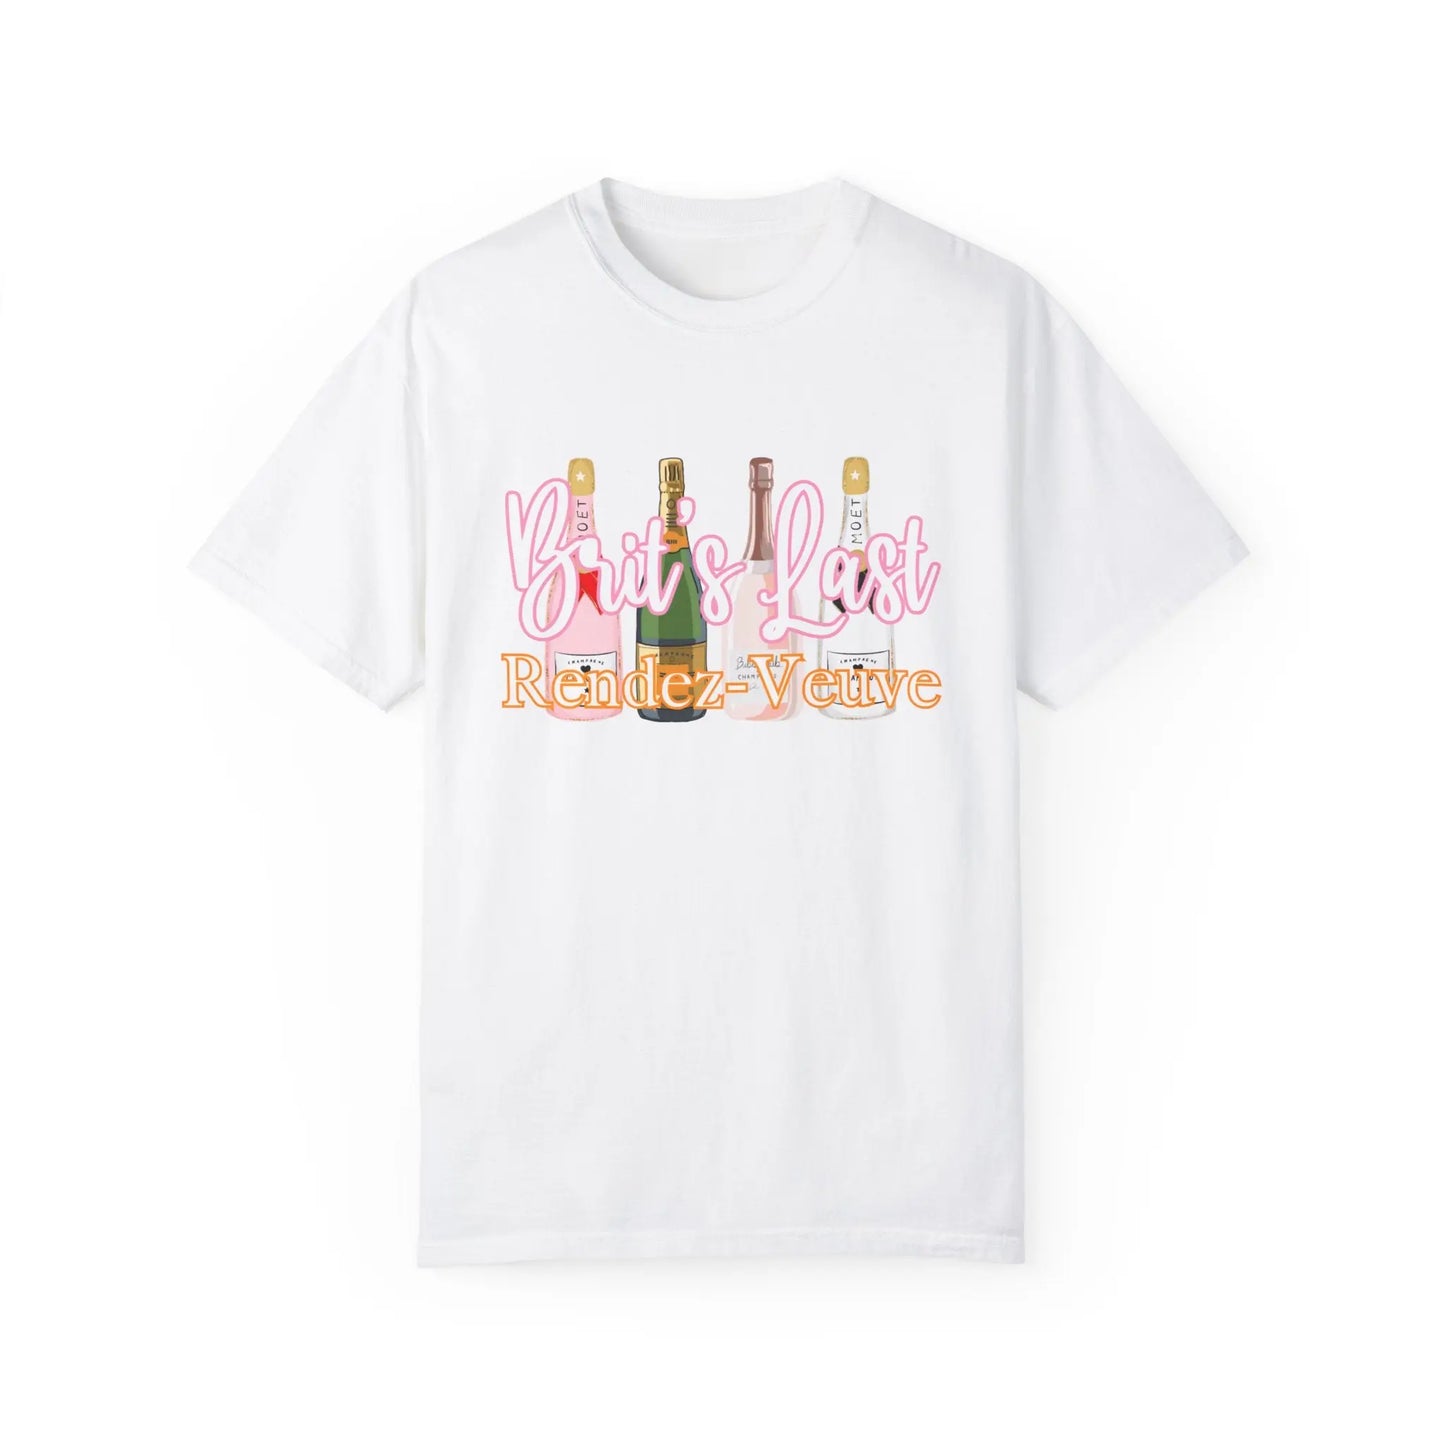 Last Rendez-Veuve Bride Personalized T-Shirt Printify